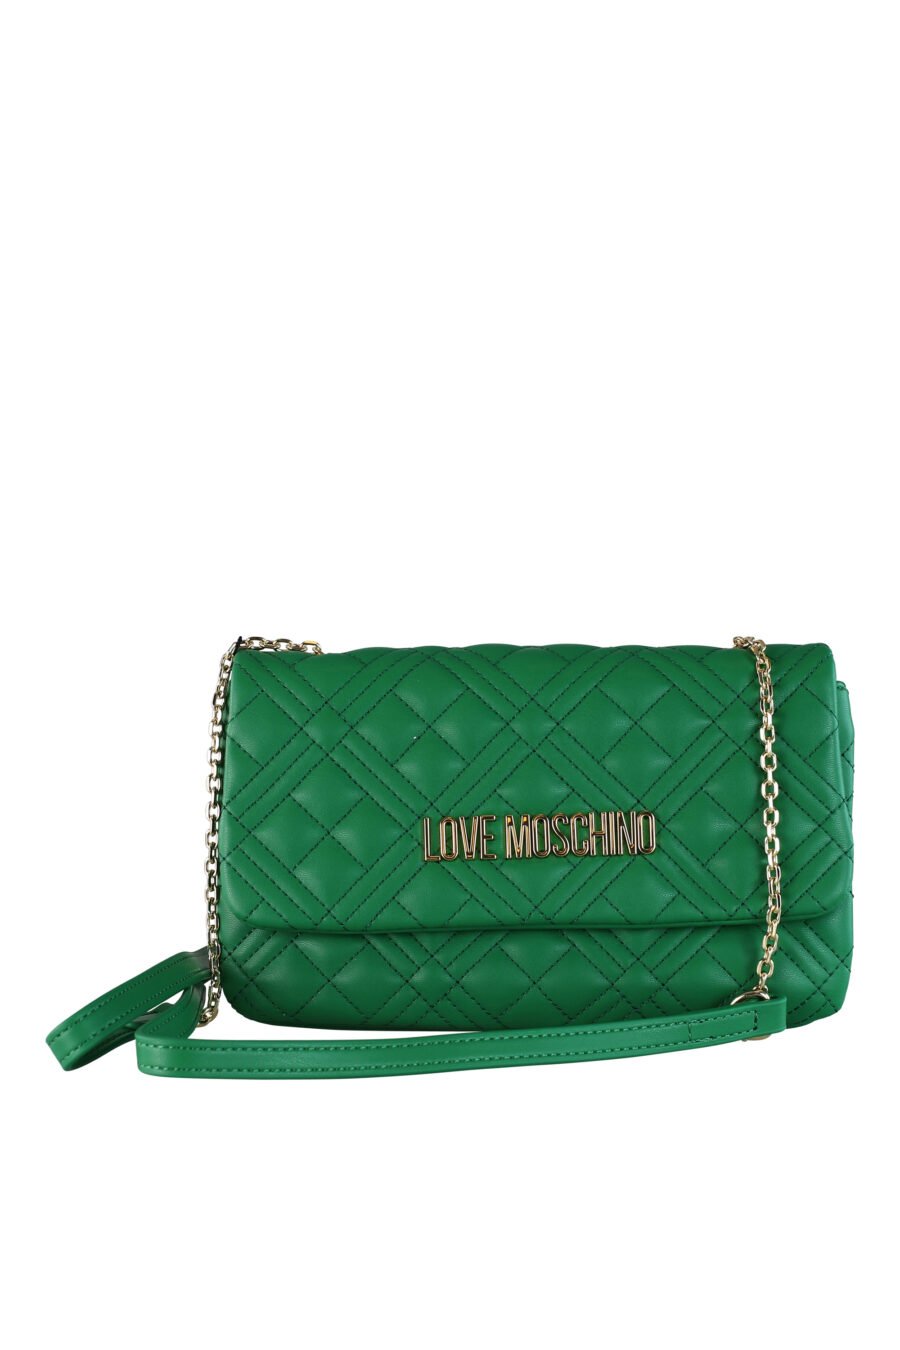 Rectangular green shoulder bag with gold lettering logo - IMG 0427